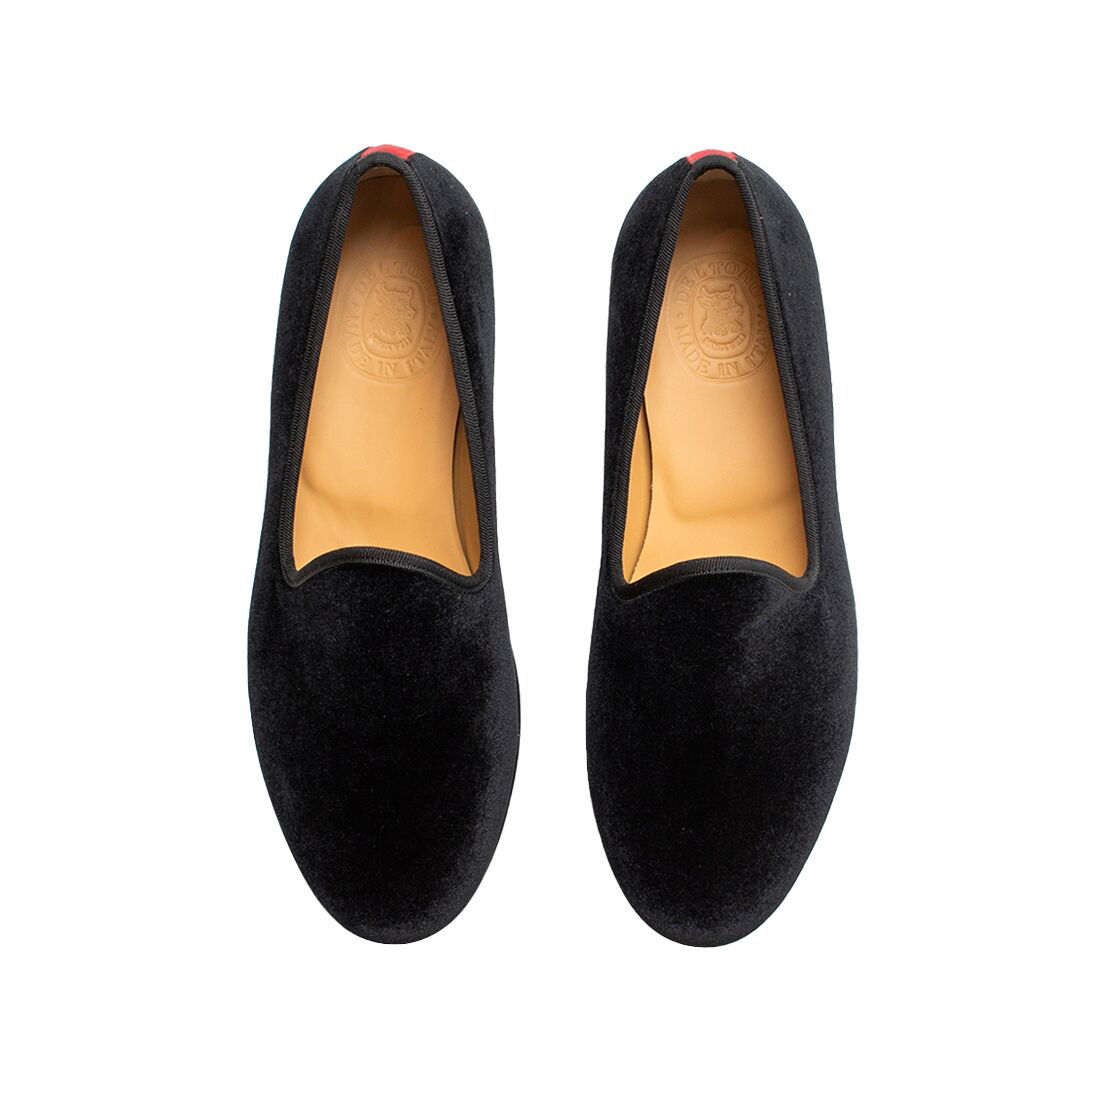 Sean croc-effect velvet slippers